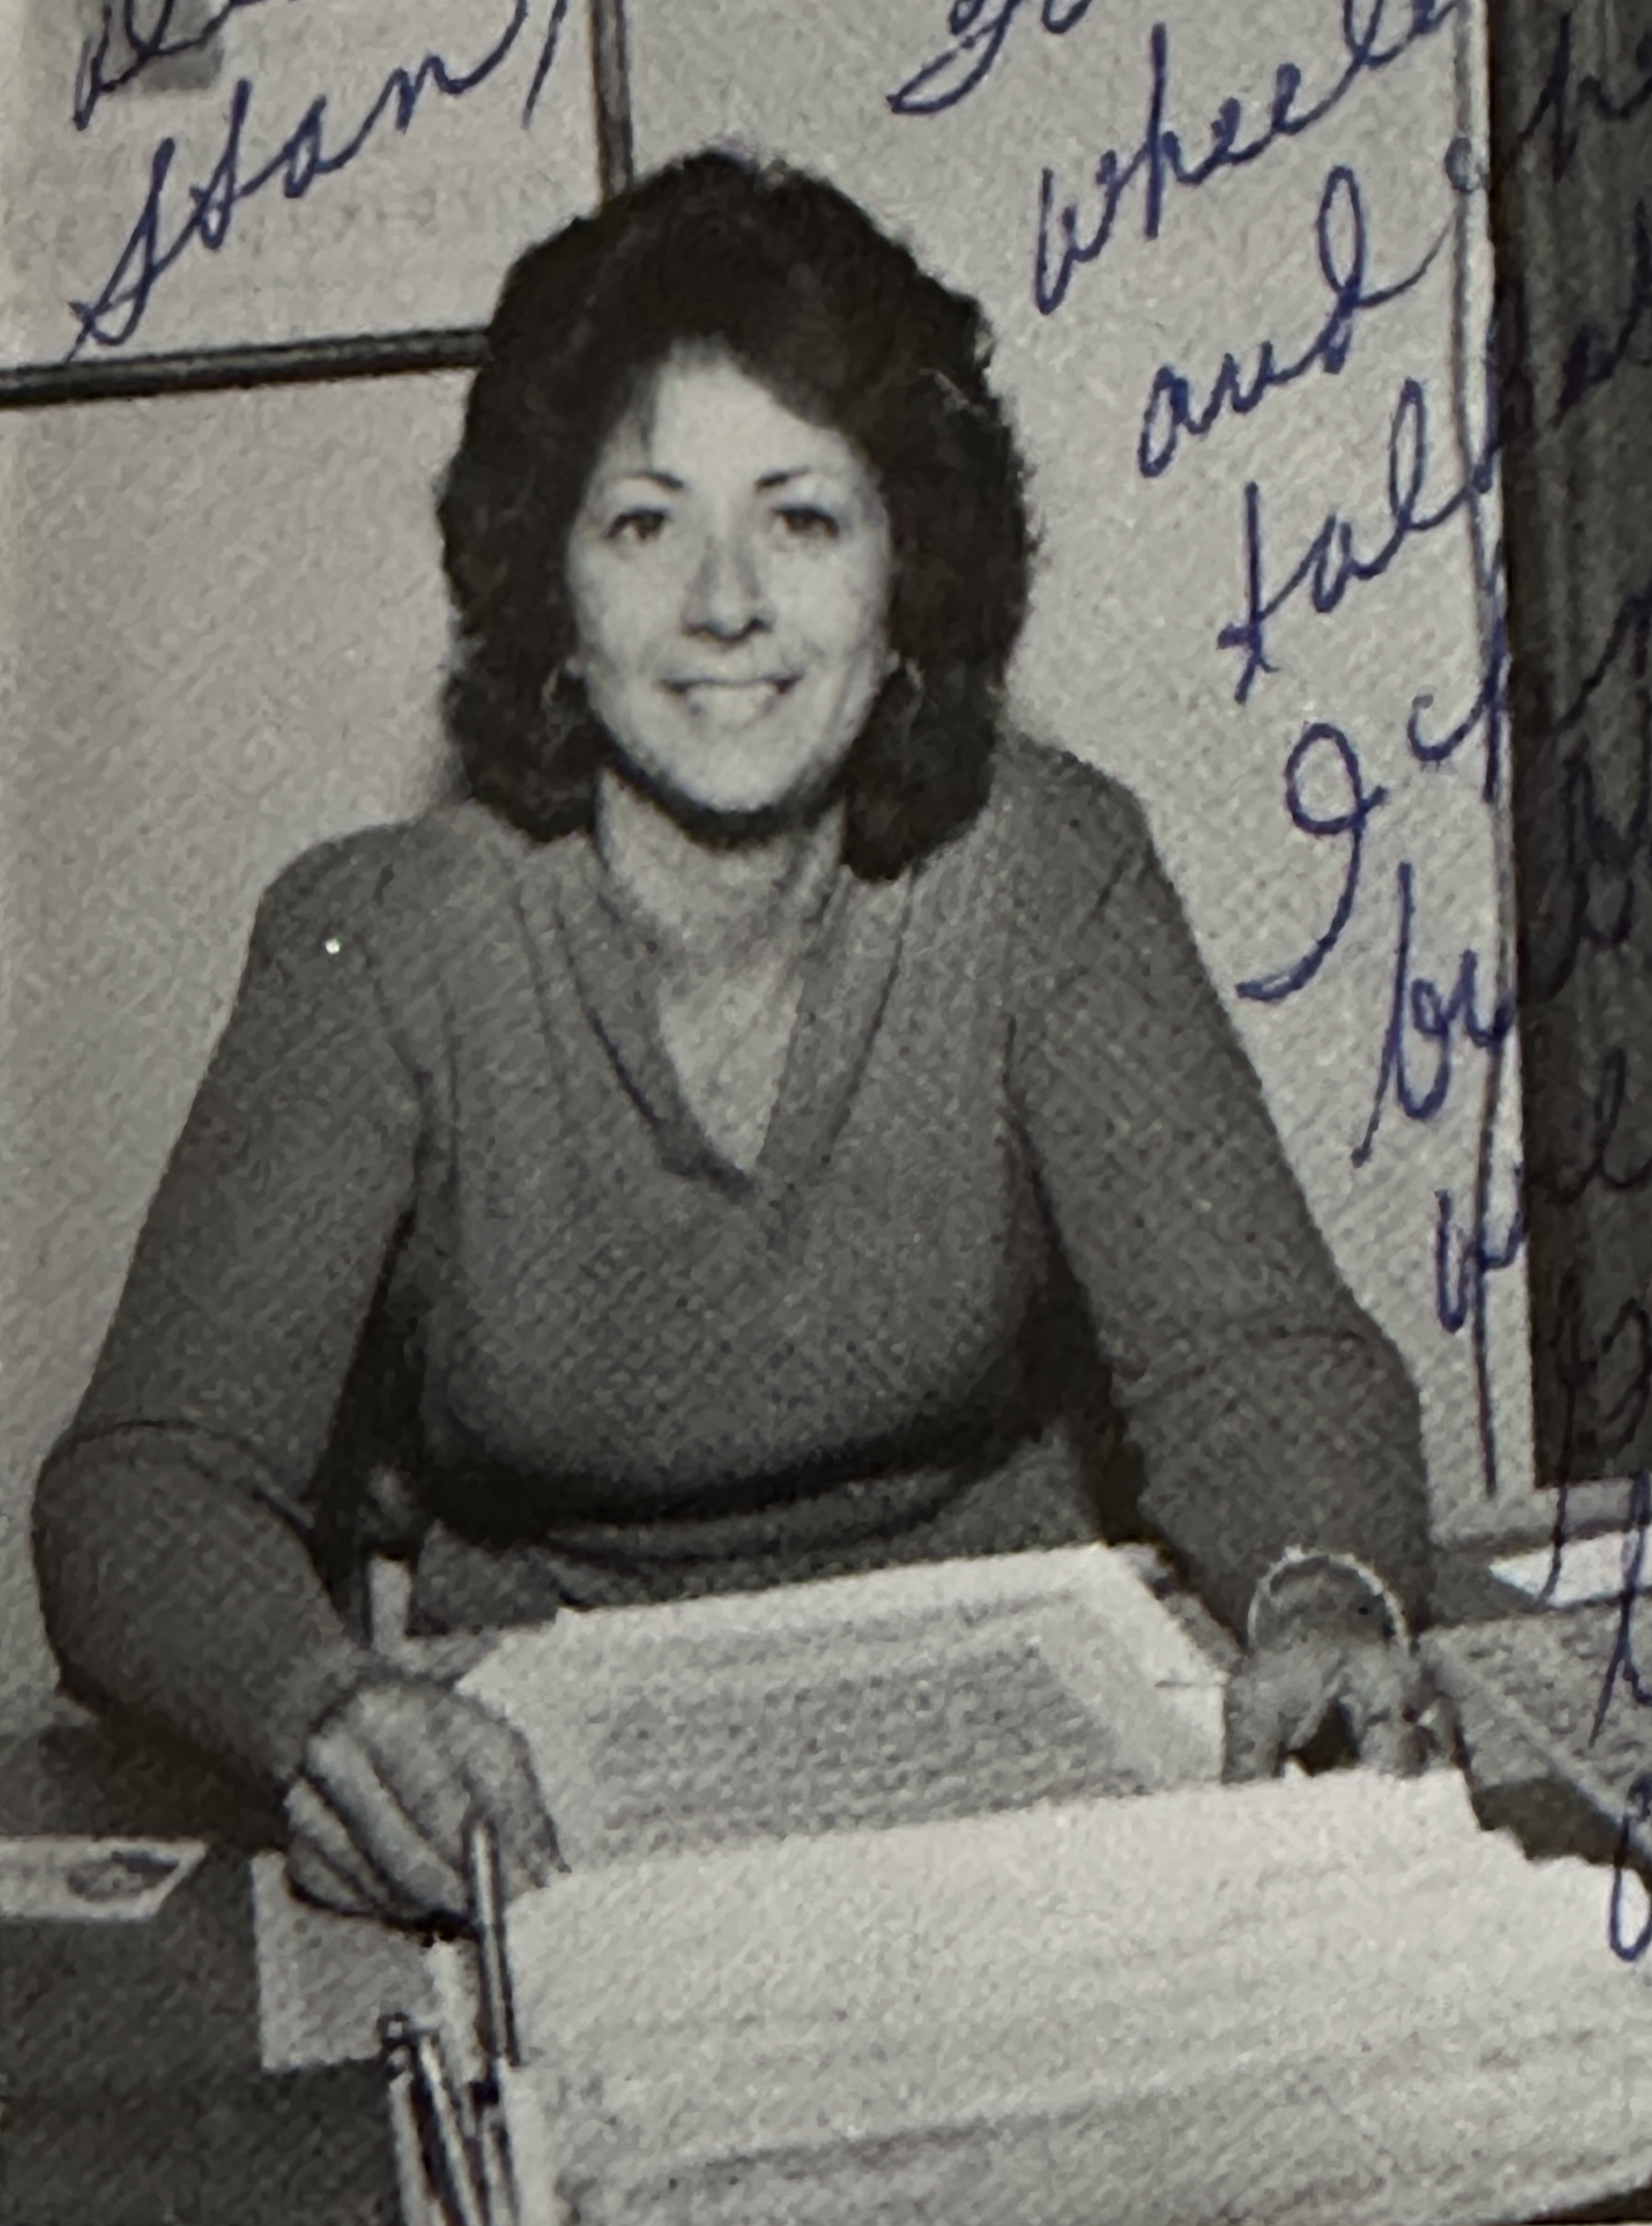 Ms. Judy Hackett